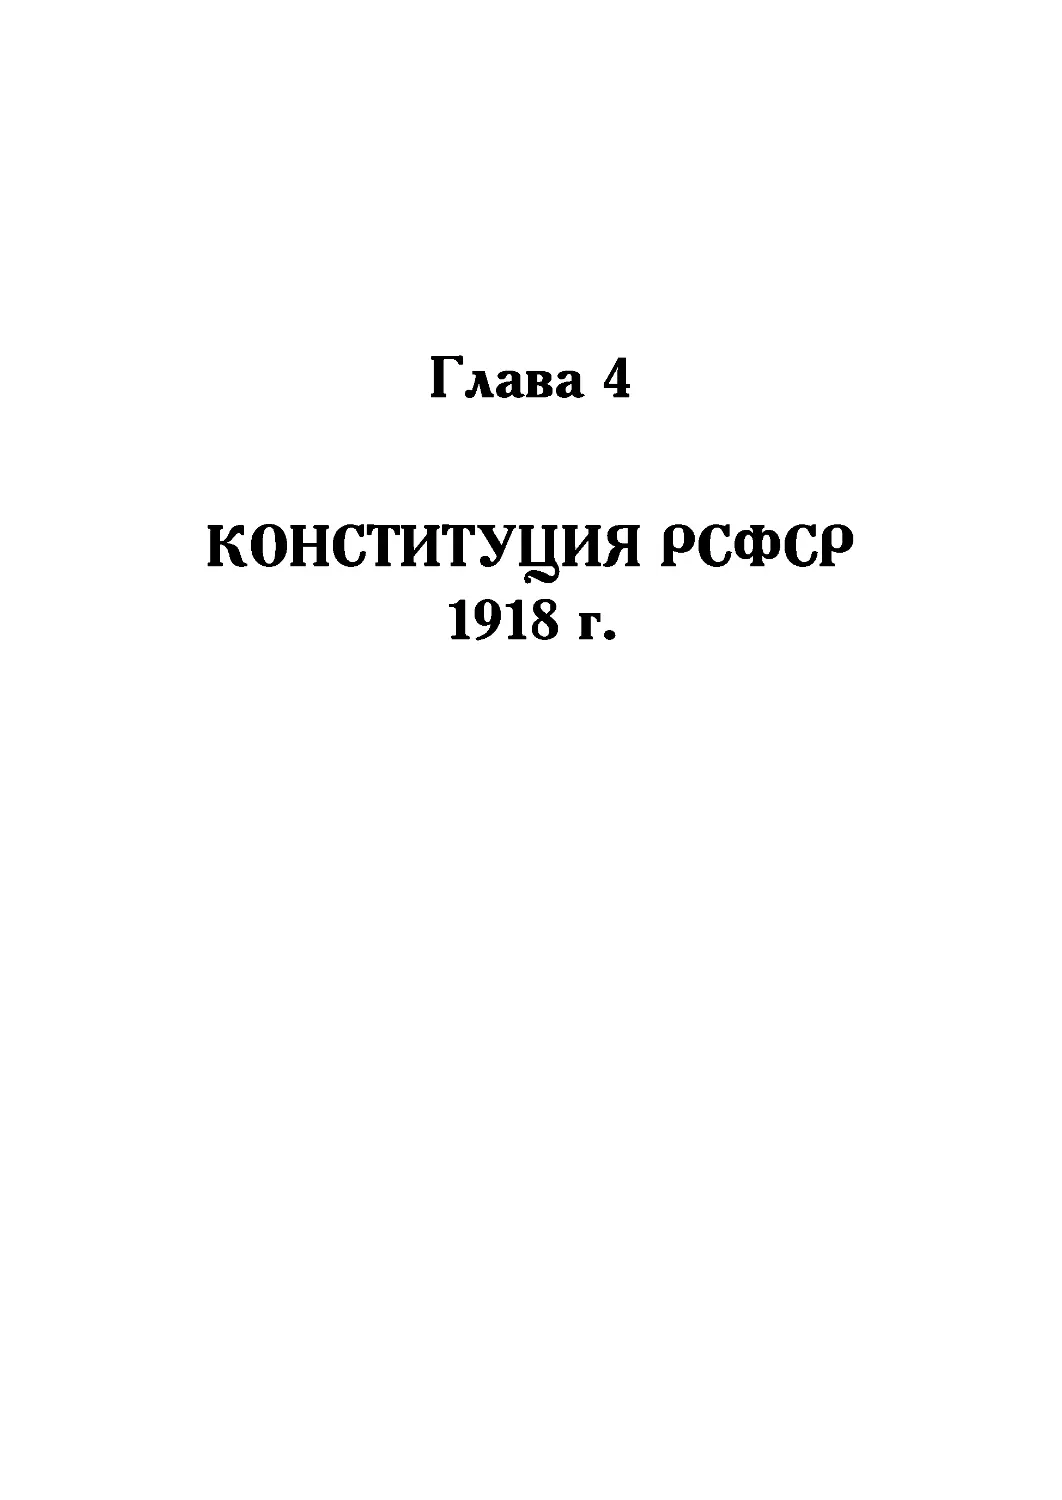 Глава 4. Конституция РСФСР 1918 года